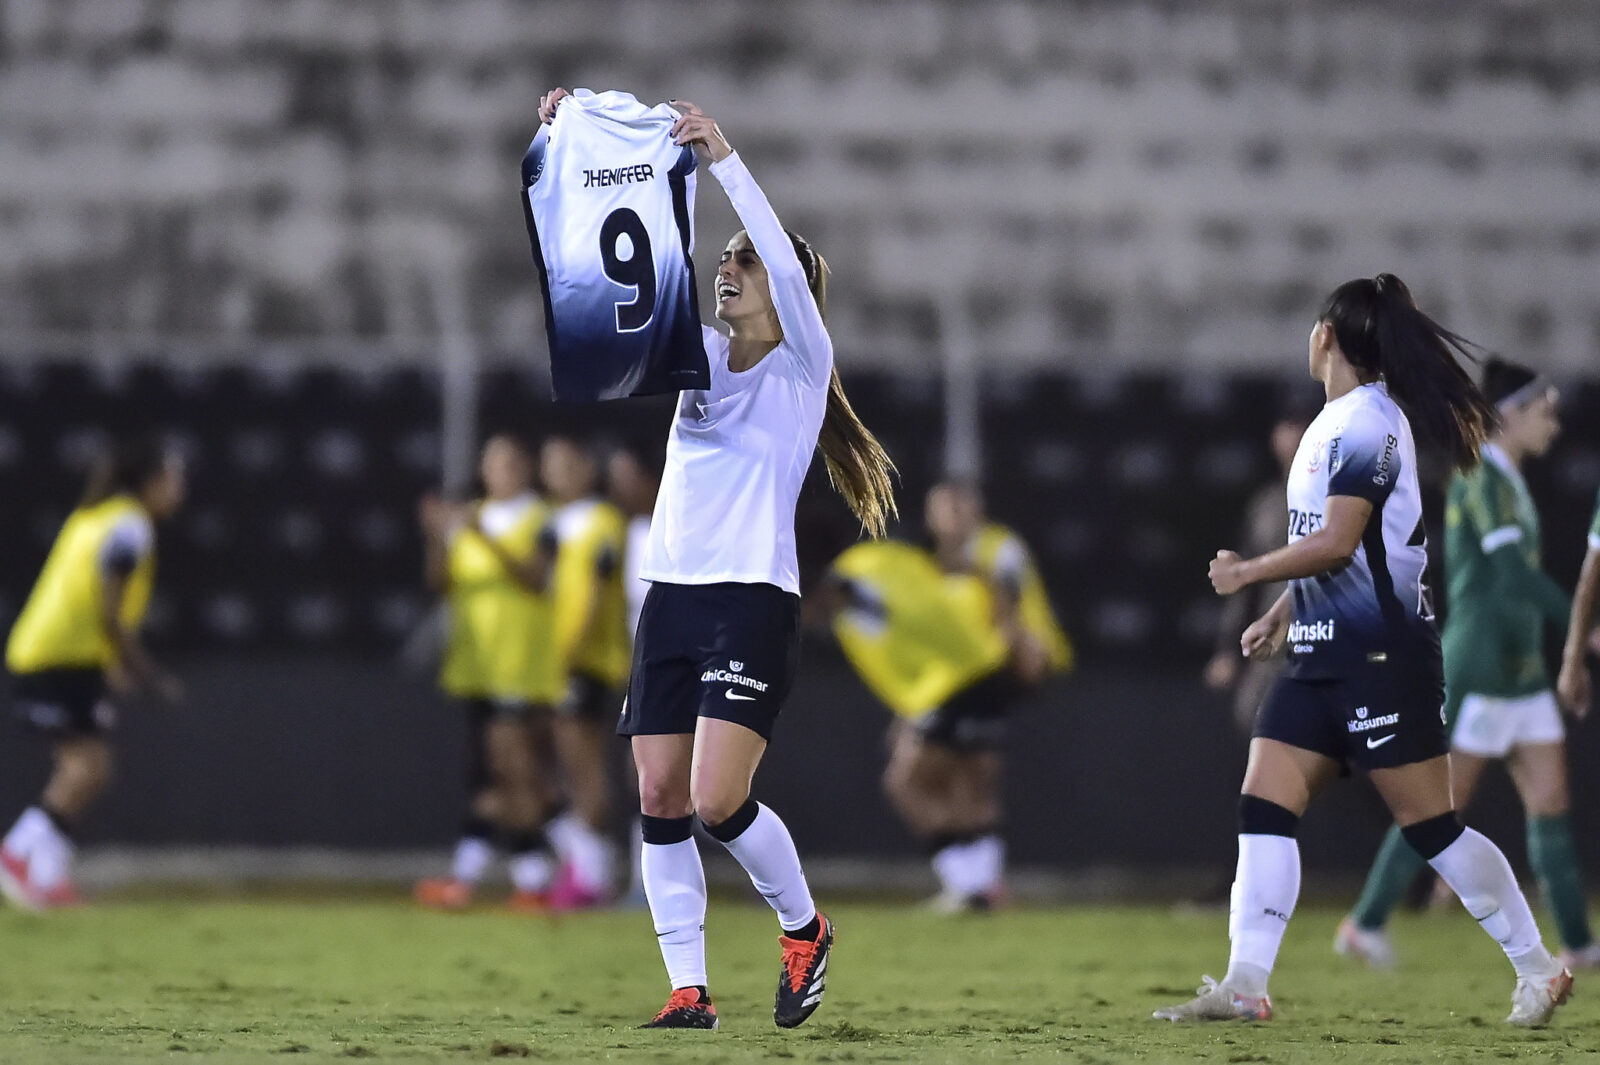 Jheniffer comemorando seu gol pelo Corinthians no Brasileirão Feminino.